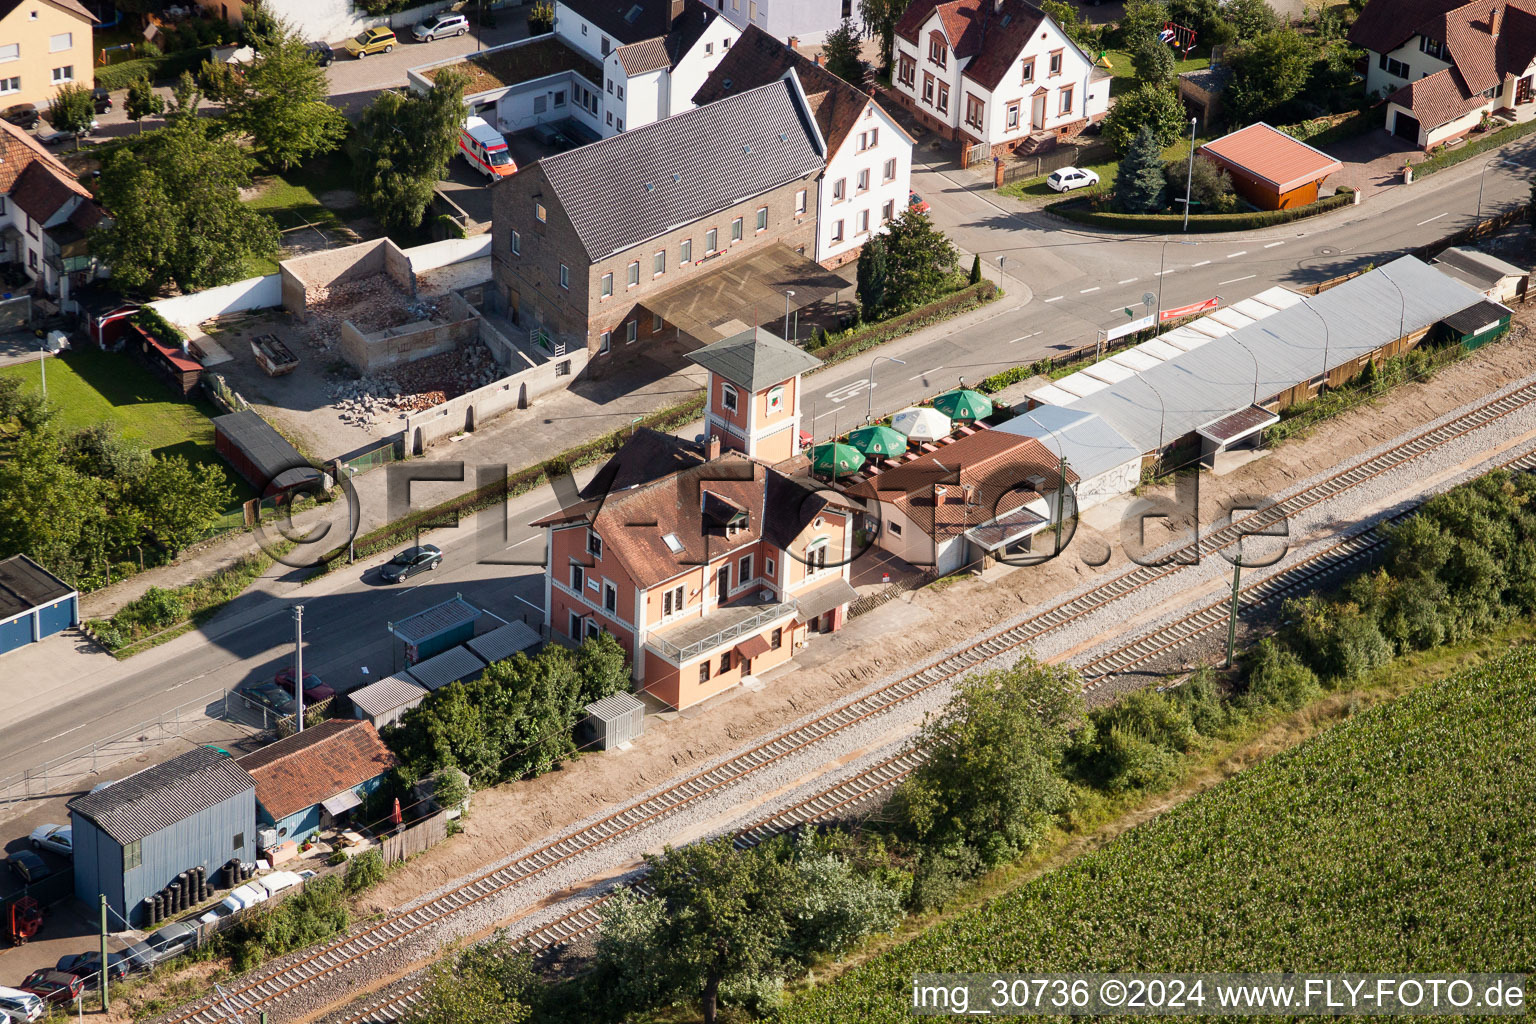 Gleisverlauf und Bahnhofsgebäude der Deutschen Bahn in Rülzheim im Bundesland Rheinland-Pfalz, Deutschland